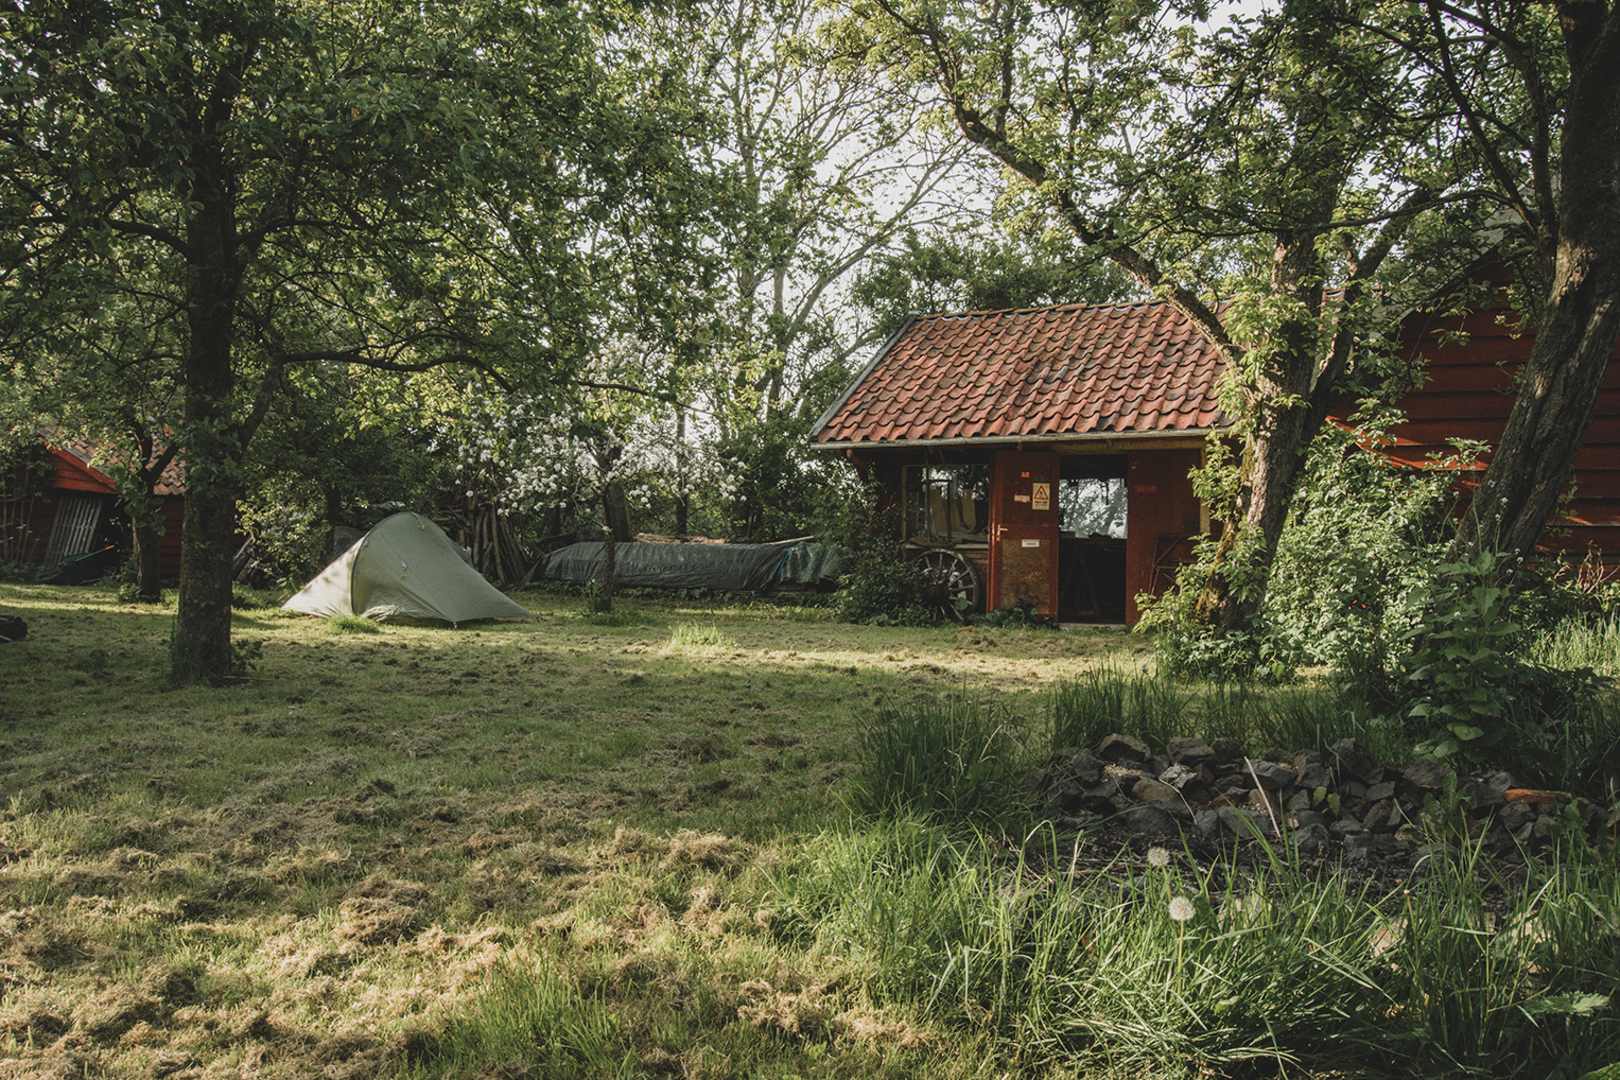 Frits' campsite in Groningen